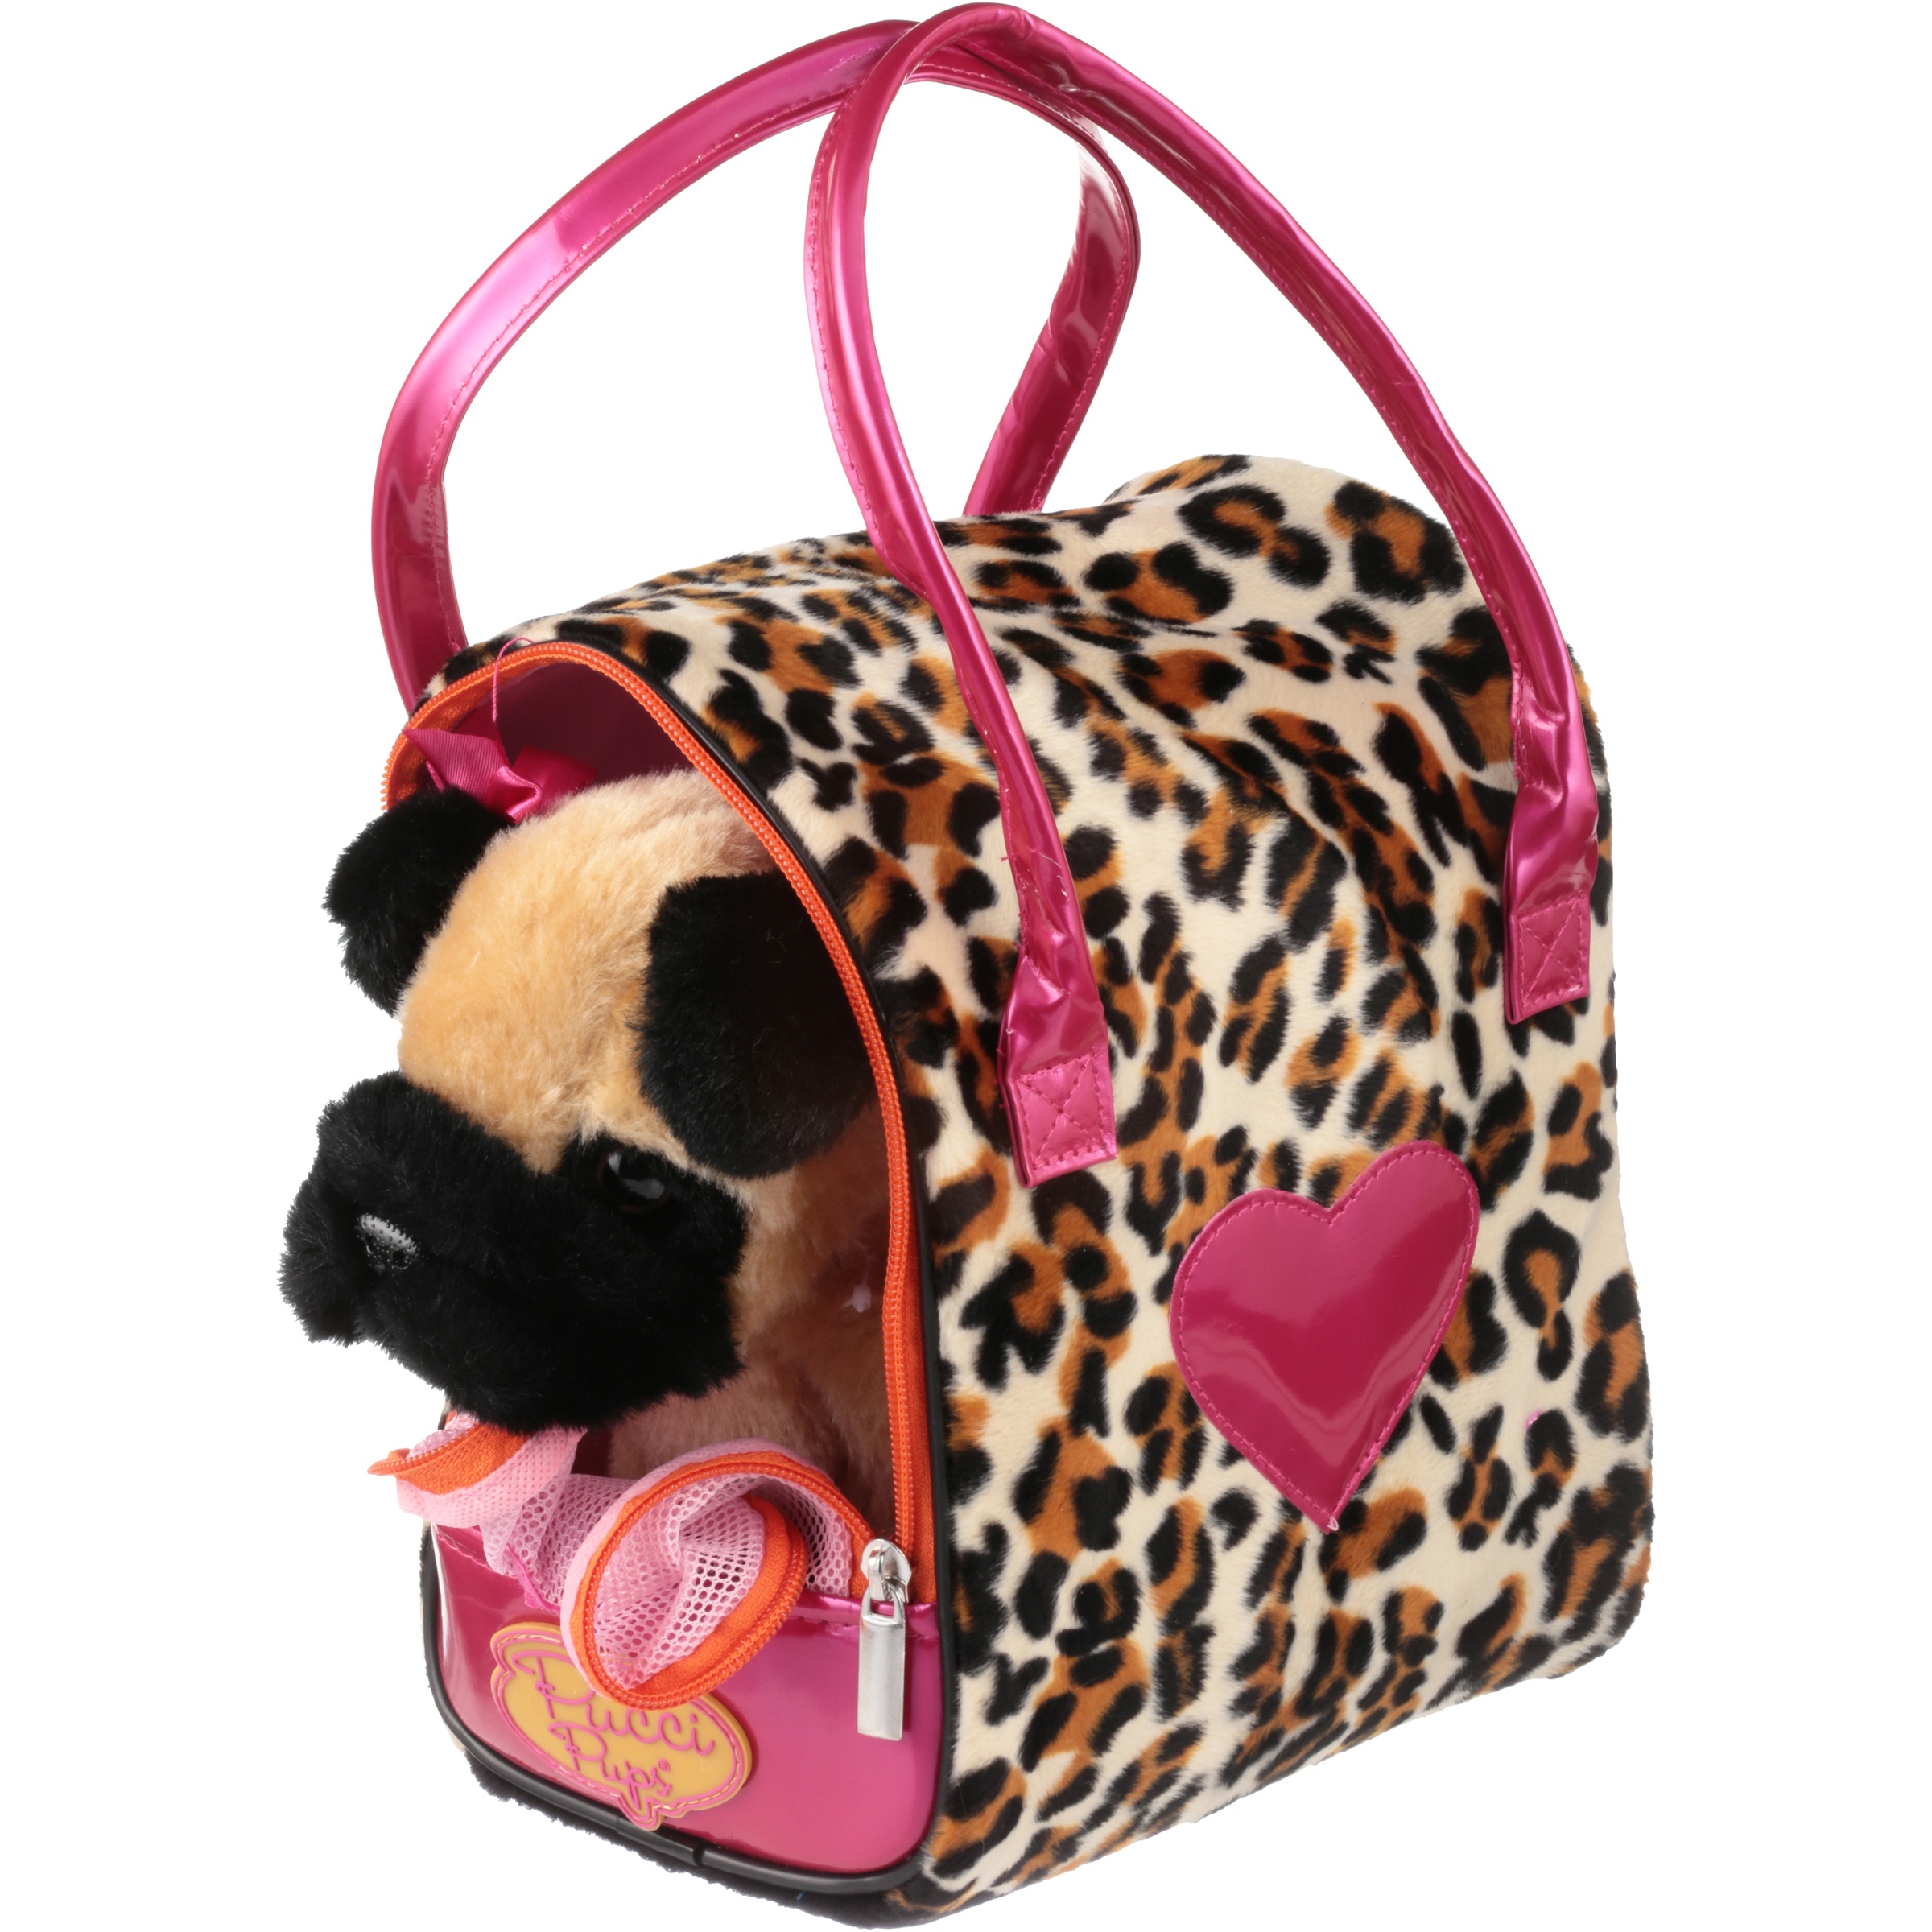 Pucci Pups Pug & Leopard Print Bag - image 1 of 4